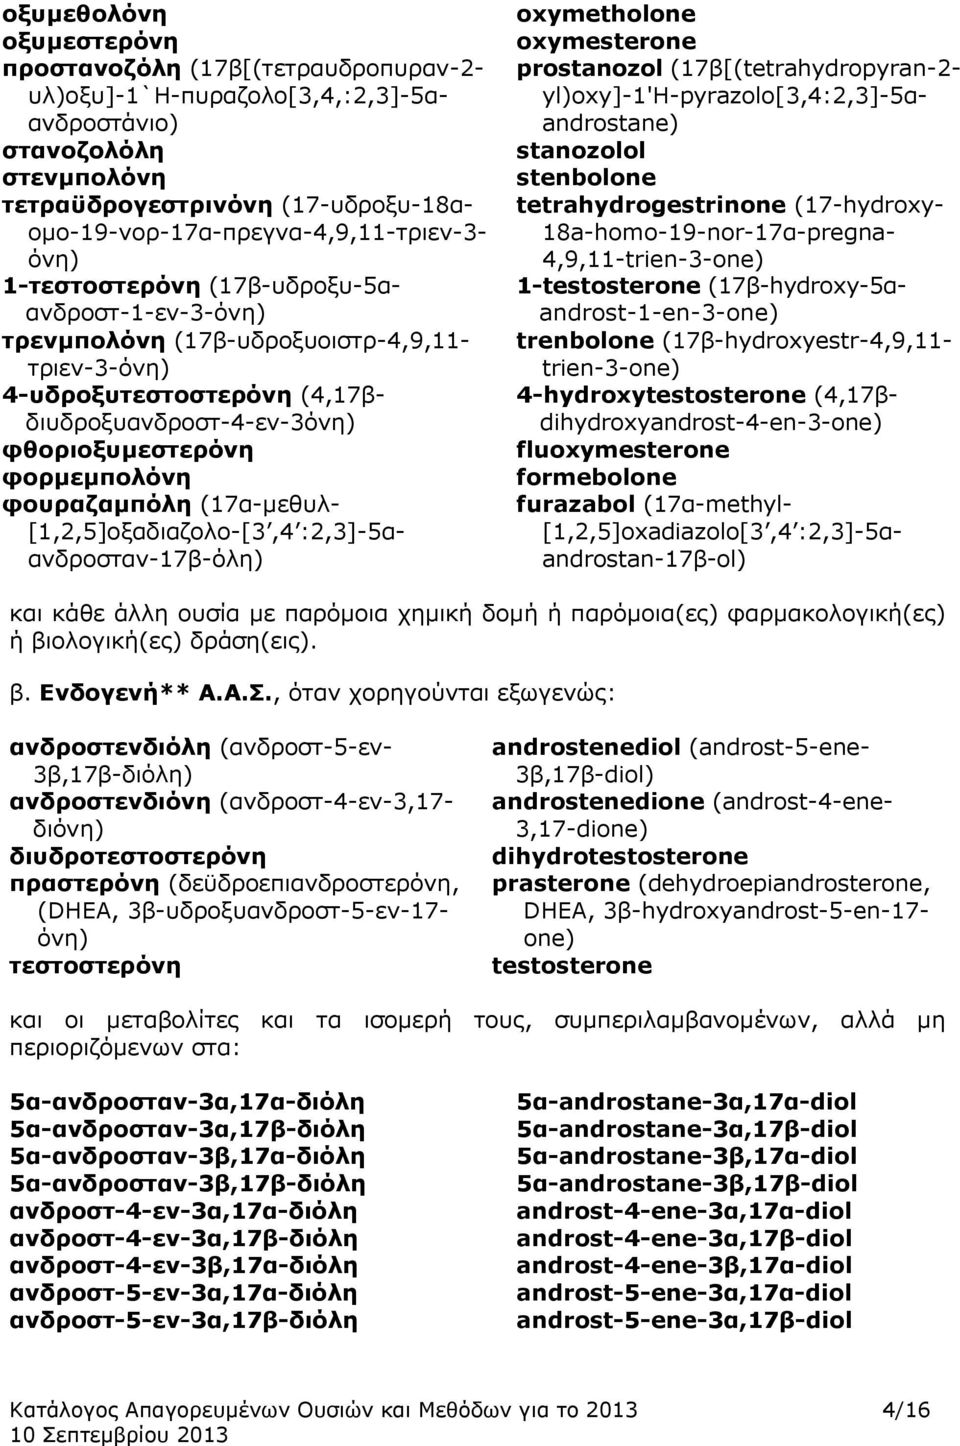 φθοριοξυμεστερόνη φορμεμπολόνη φουραζαμπόλη (17α-μεθυλ- [1,2,5]οξαδιαζολο-[3,4 :2,3]-5αανδροσταν-17β-όλη) oxymetholone oxymesterone prostanozol (17β[(tetrahydropyran-2-